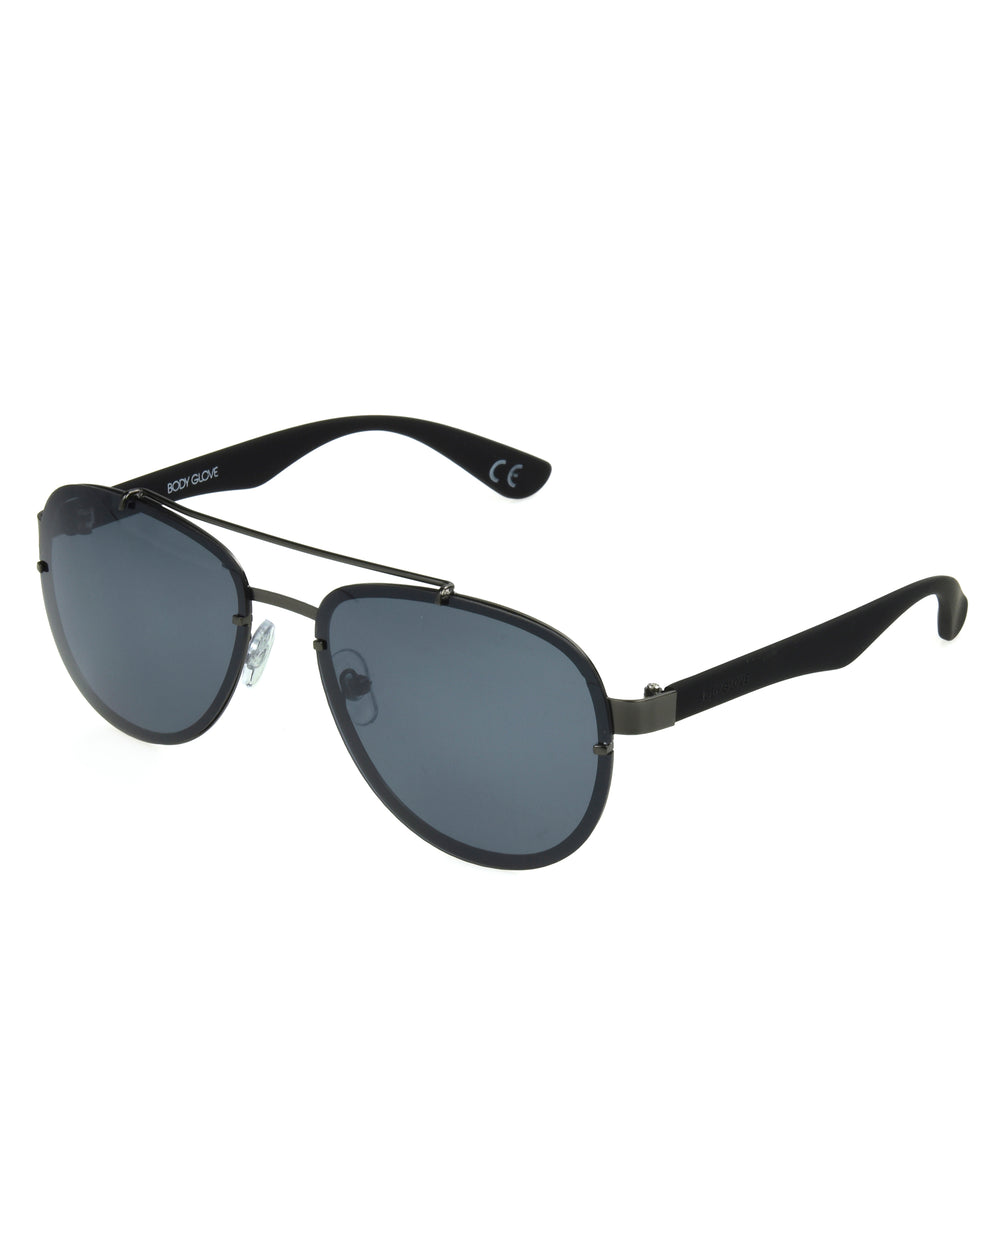 Men's BG1801 Polarized Sunglasses - Graphite - Body Glove